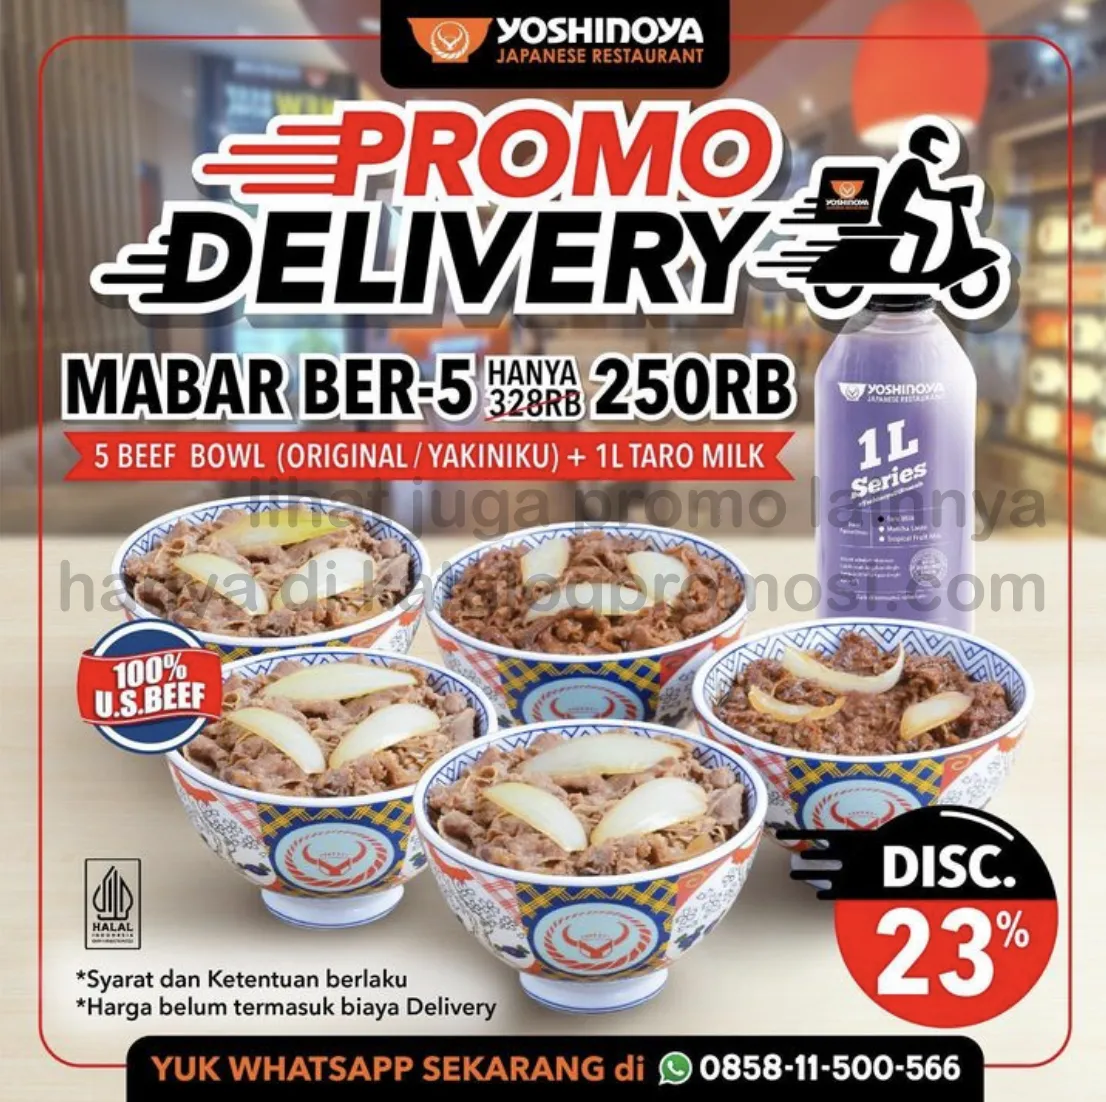 Promo YOSHINOYA khusus DELIVERY! Paket Makan Bareng (MABAR) untuk BERLIMA cuma Rp. 250RIBU